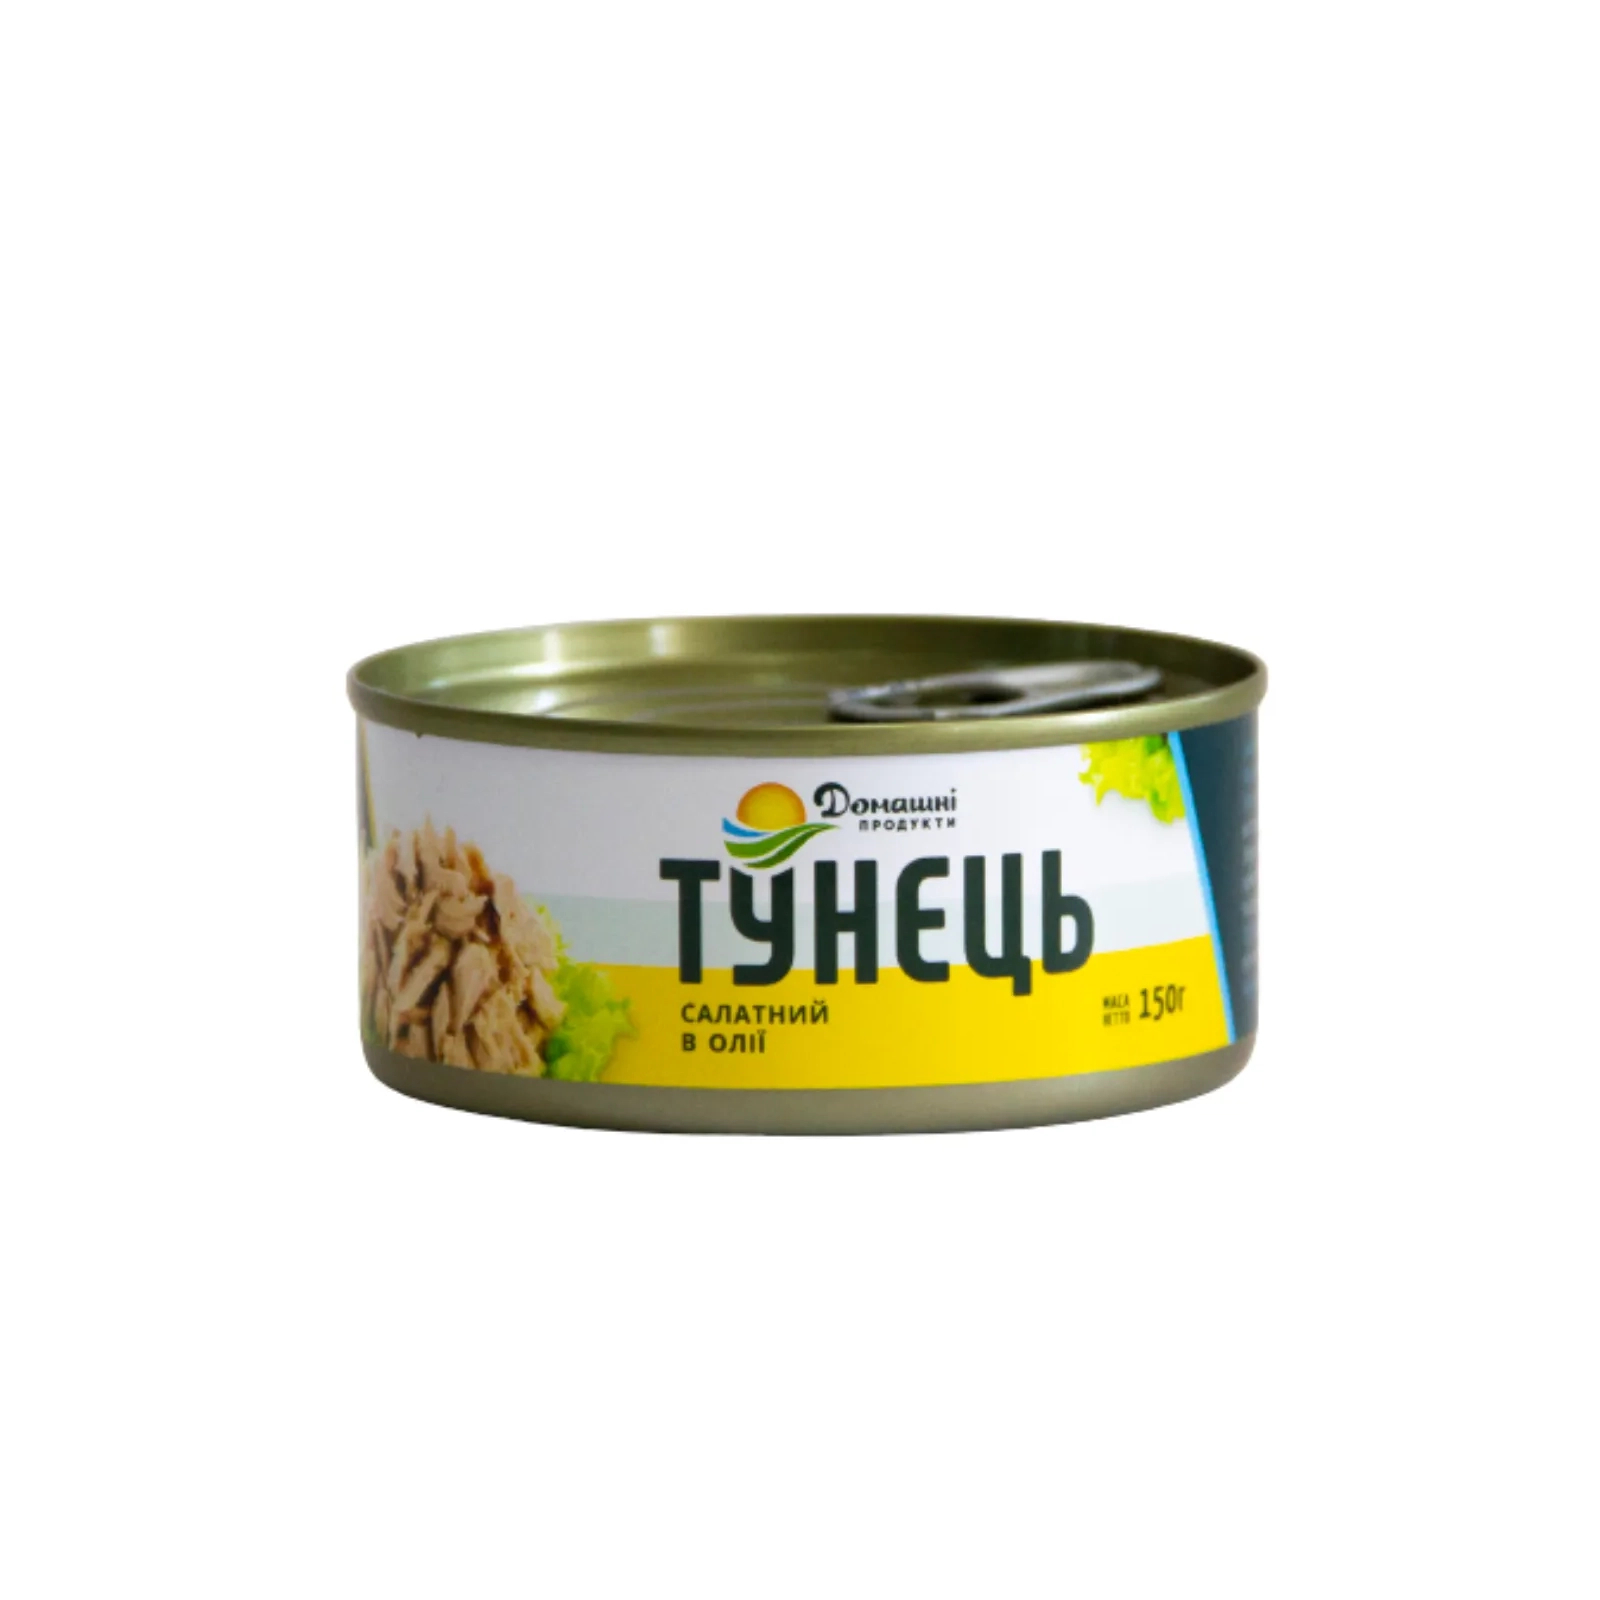 Рибні консерви Домашні продукти Тунець салатний в олії 150 г (4820186120530)